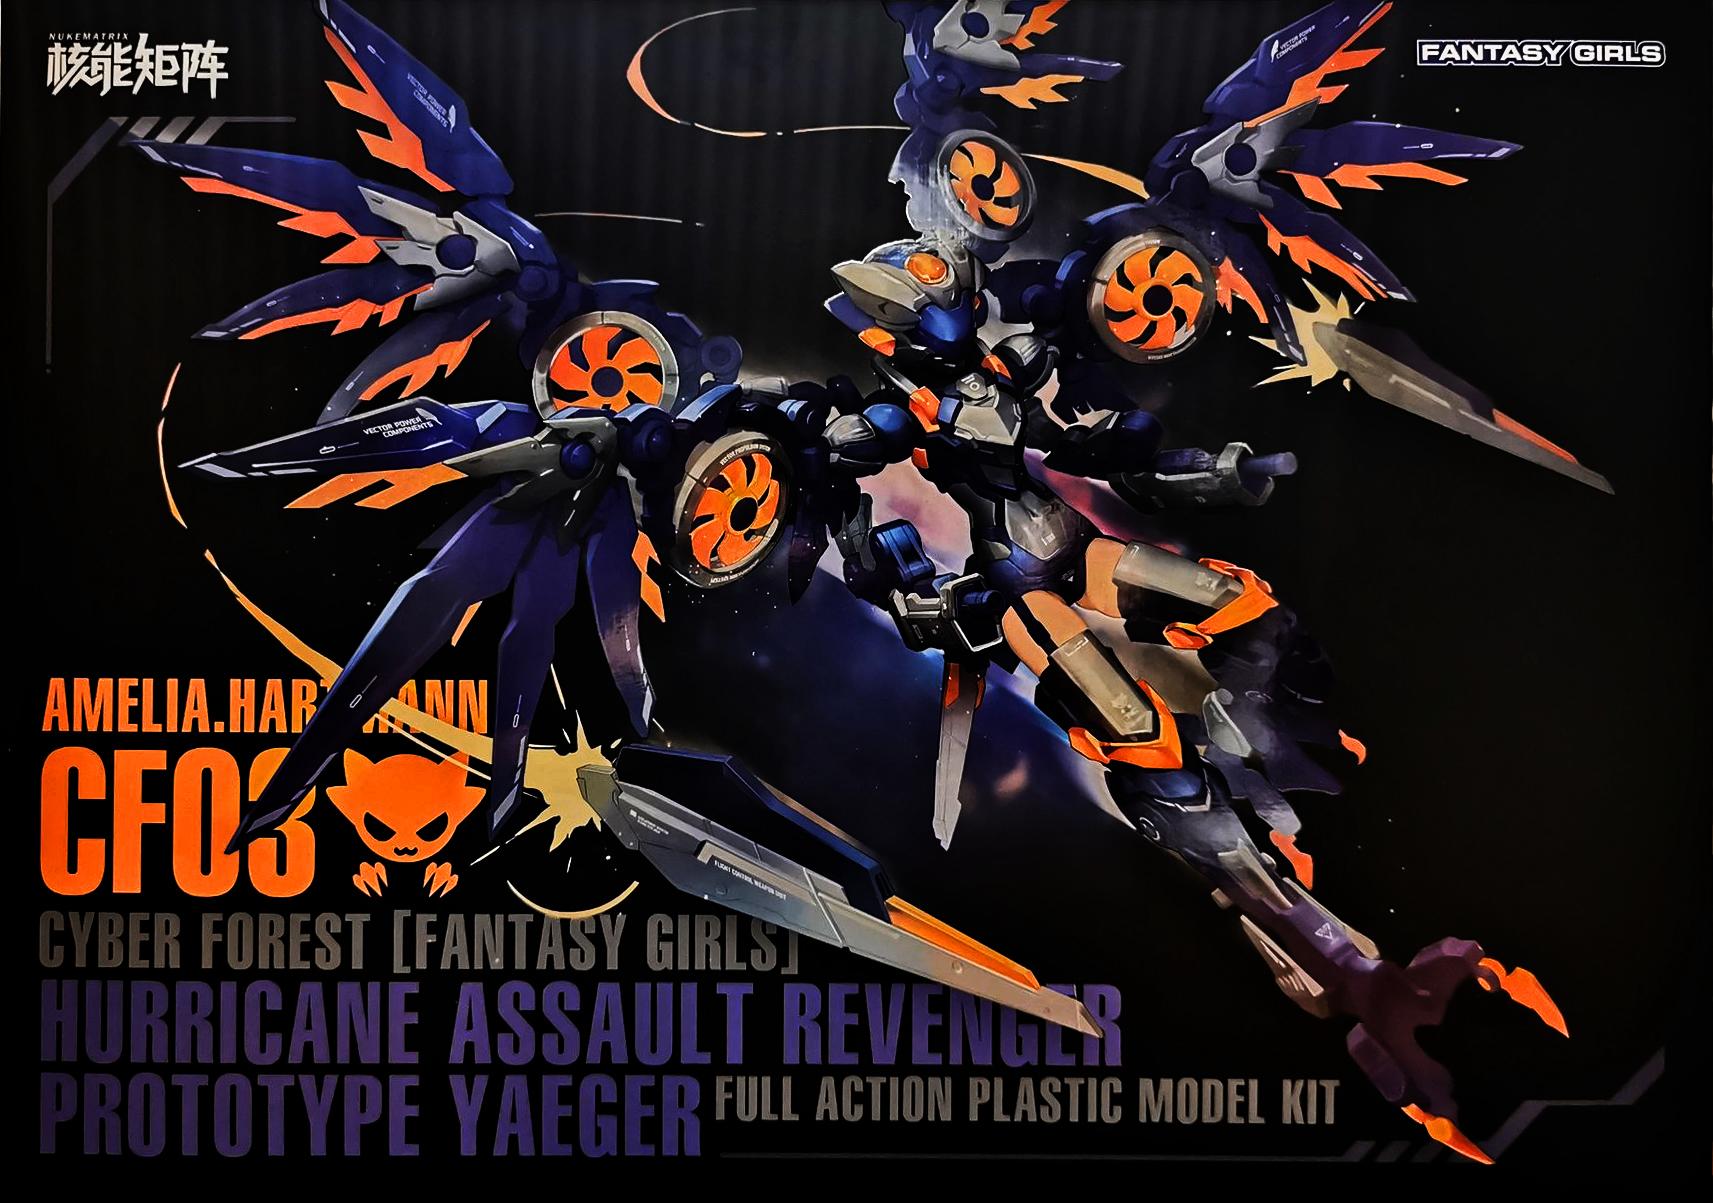 Nuke Matrix 1/12 Cyber Forest [Fantasy Girls] Hurricane Assault  Revenger:Prototype Yaeger